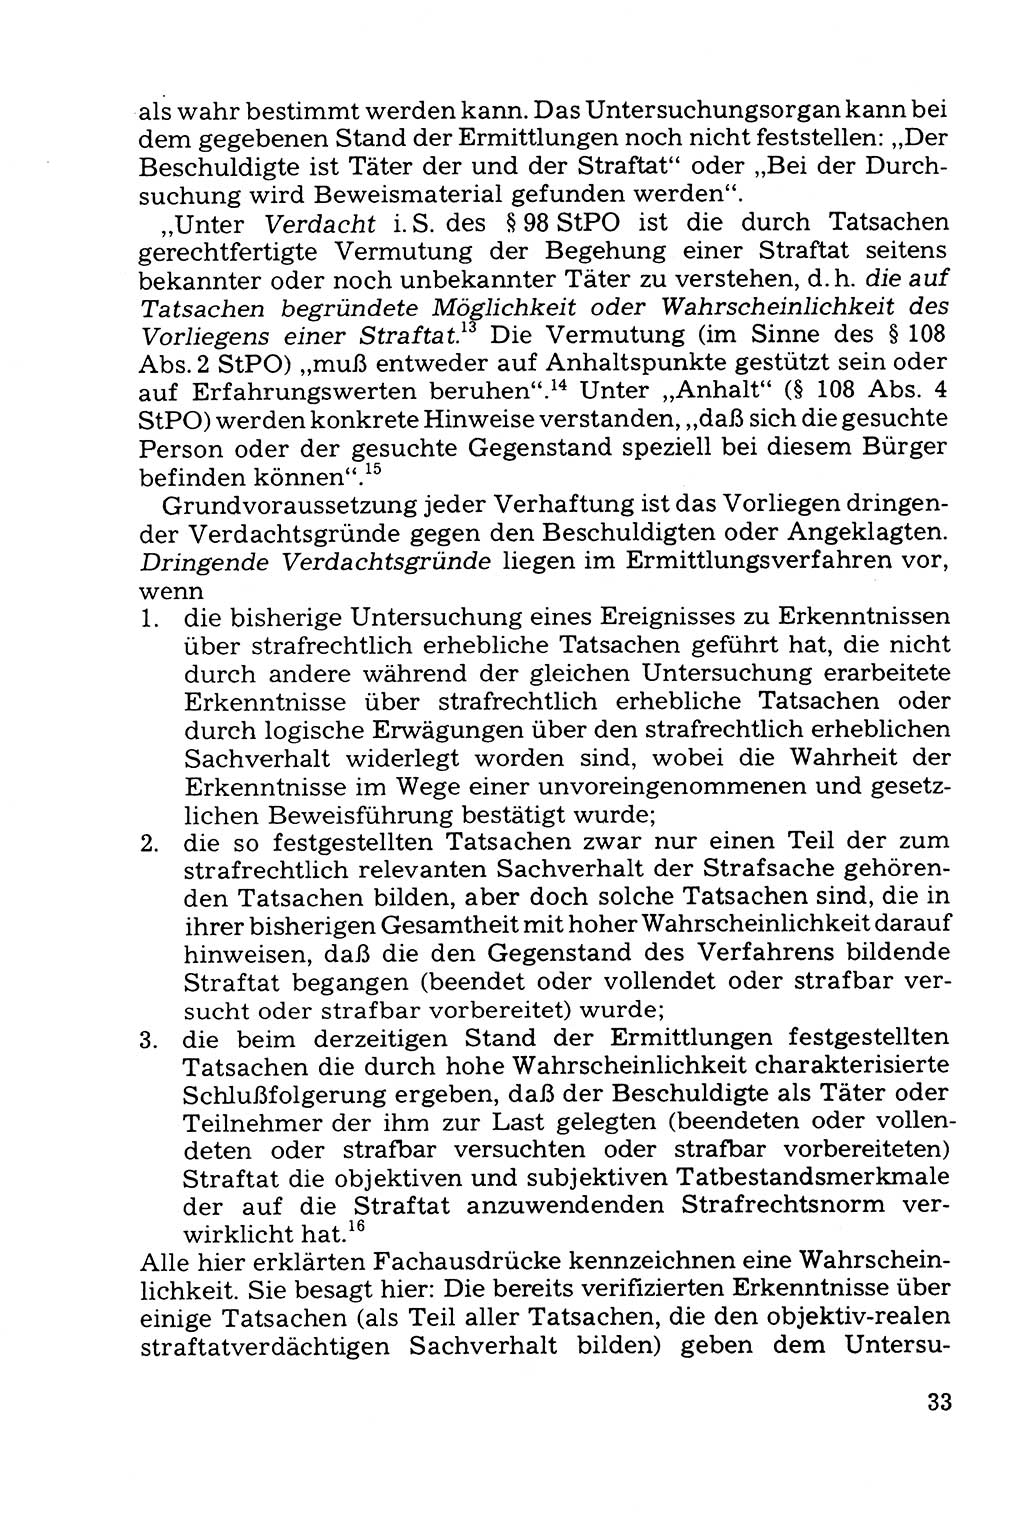 Grundfragen der Beweisführung im Ermittlungsverfahren [Deutsche Demokratische Republik (DDR)] 1980, Seite 33 (Bws.-Fhrg. EV DDR 1980, S. 33)